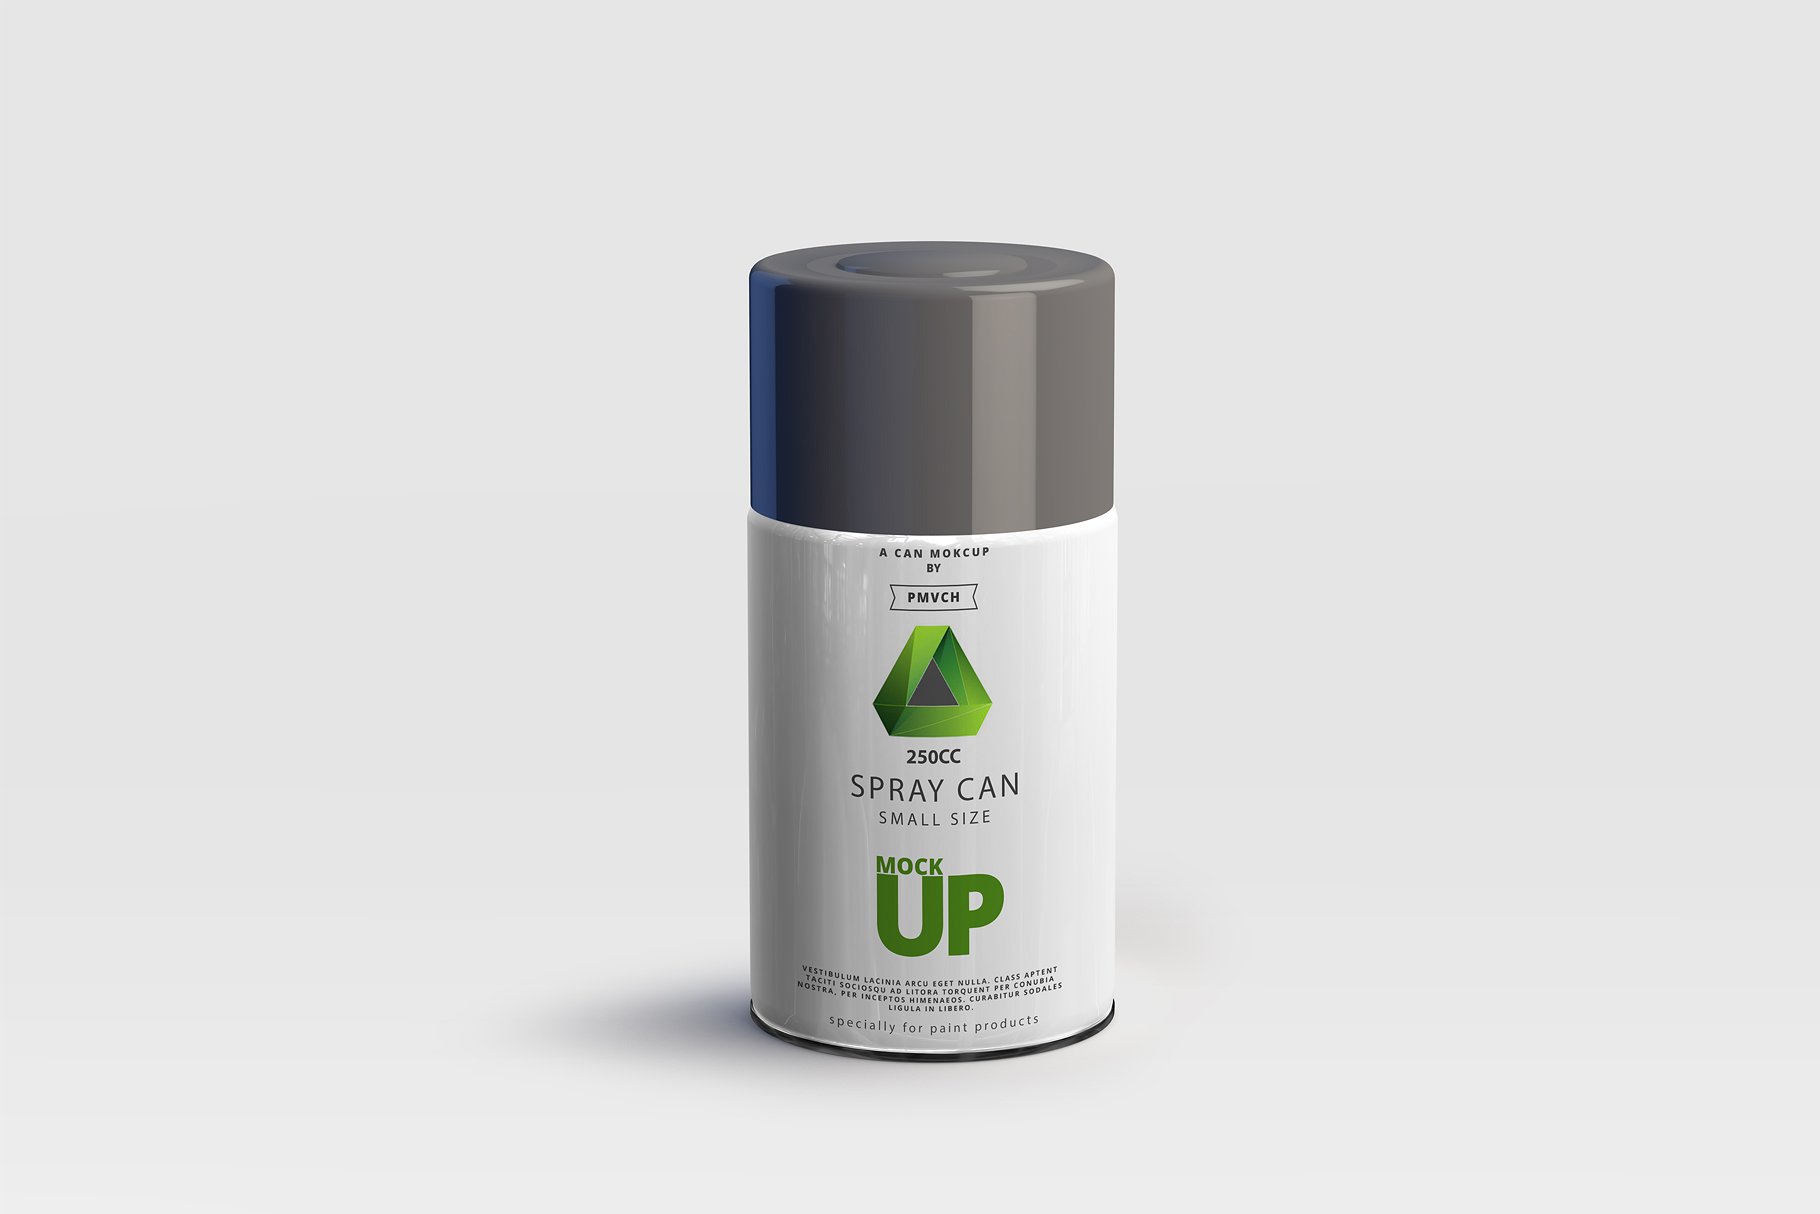 小型喷雾罐实体模型 Spray Can Mockup – Small Size插图2